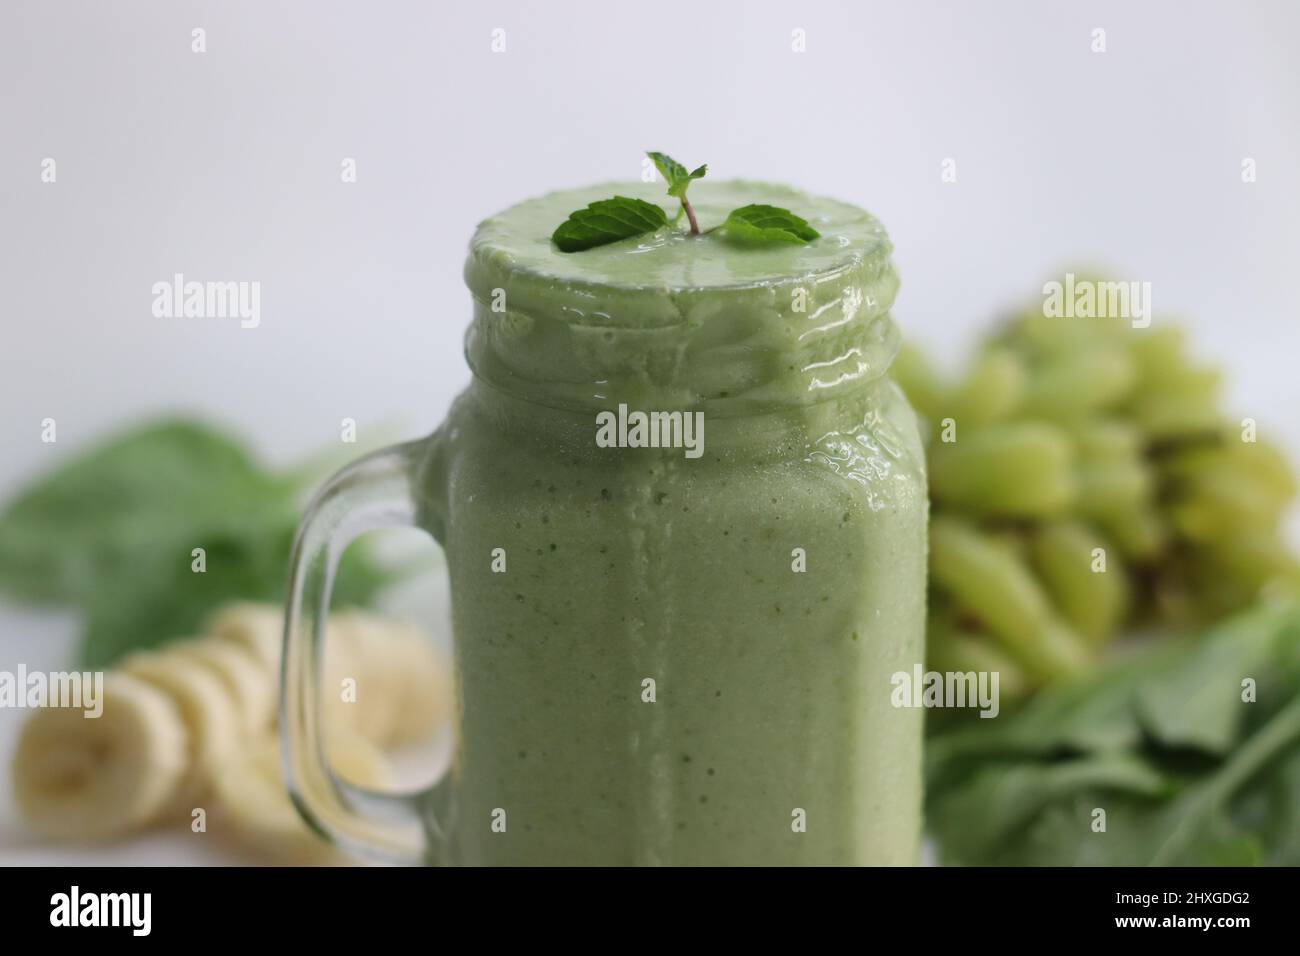 Grüner Smoothie aus gefrorenen grünen Trauben, frischem Babyspinat, Bananen  und Mandelmilch. Serviert im Einmachglas. Aufgenommen auf weißem  Hintergrund Stockfotografie - Alamy